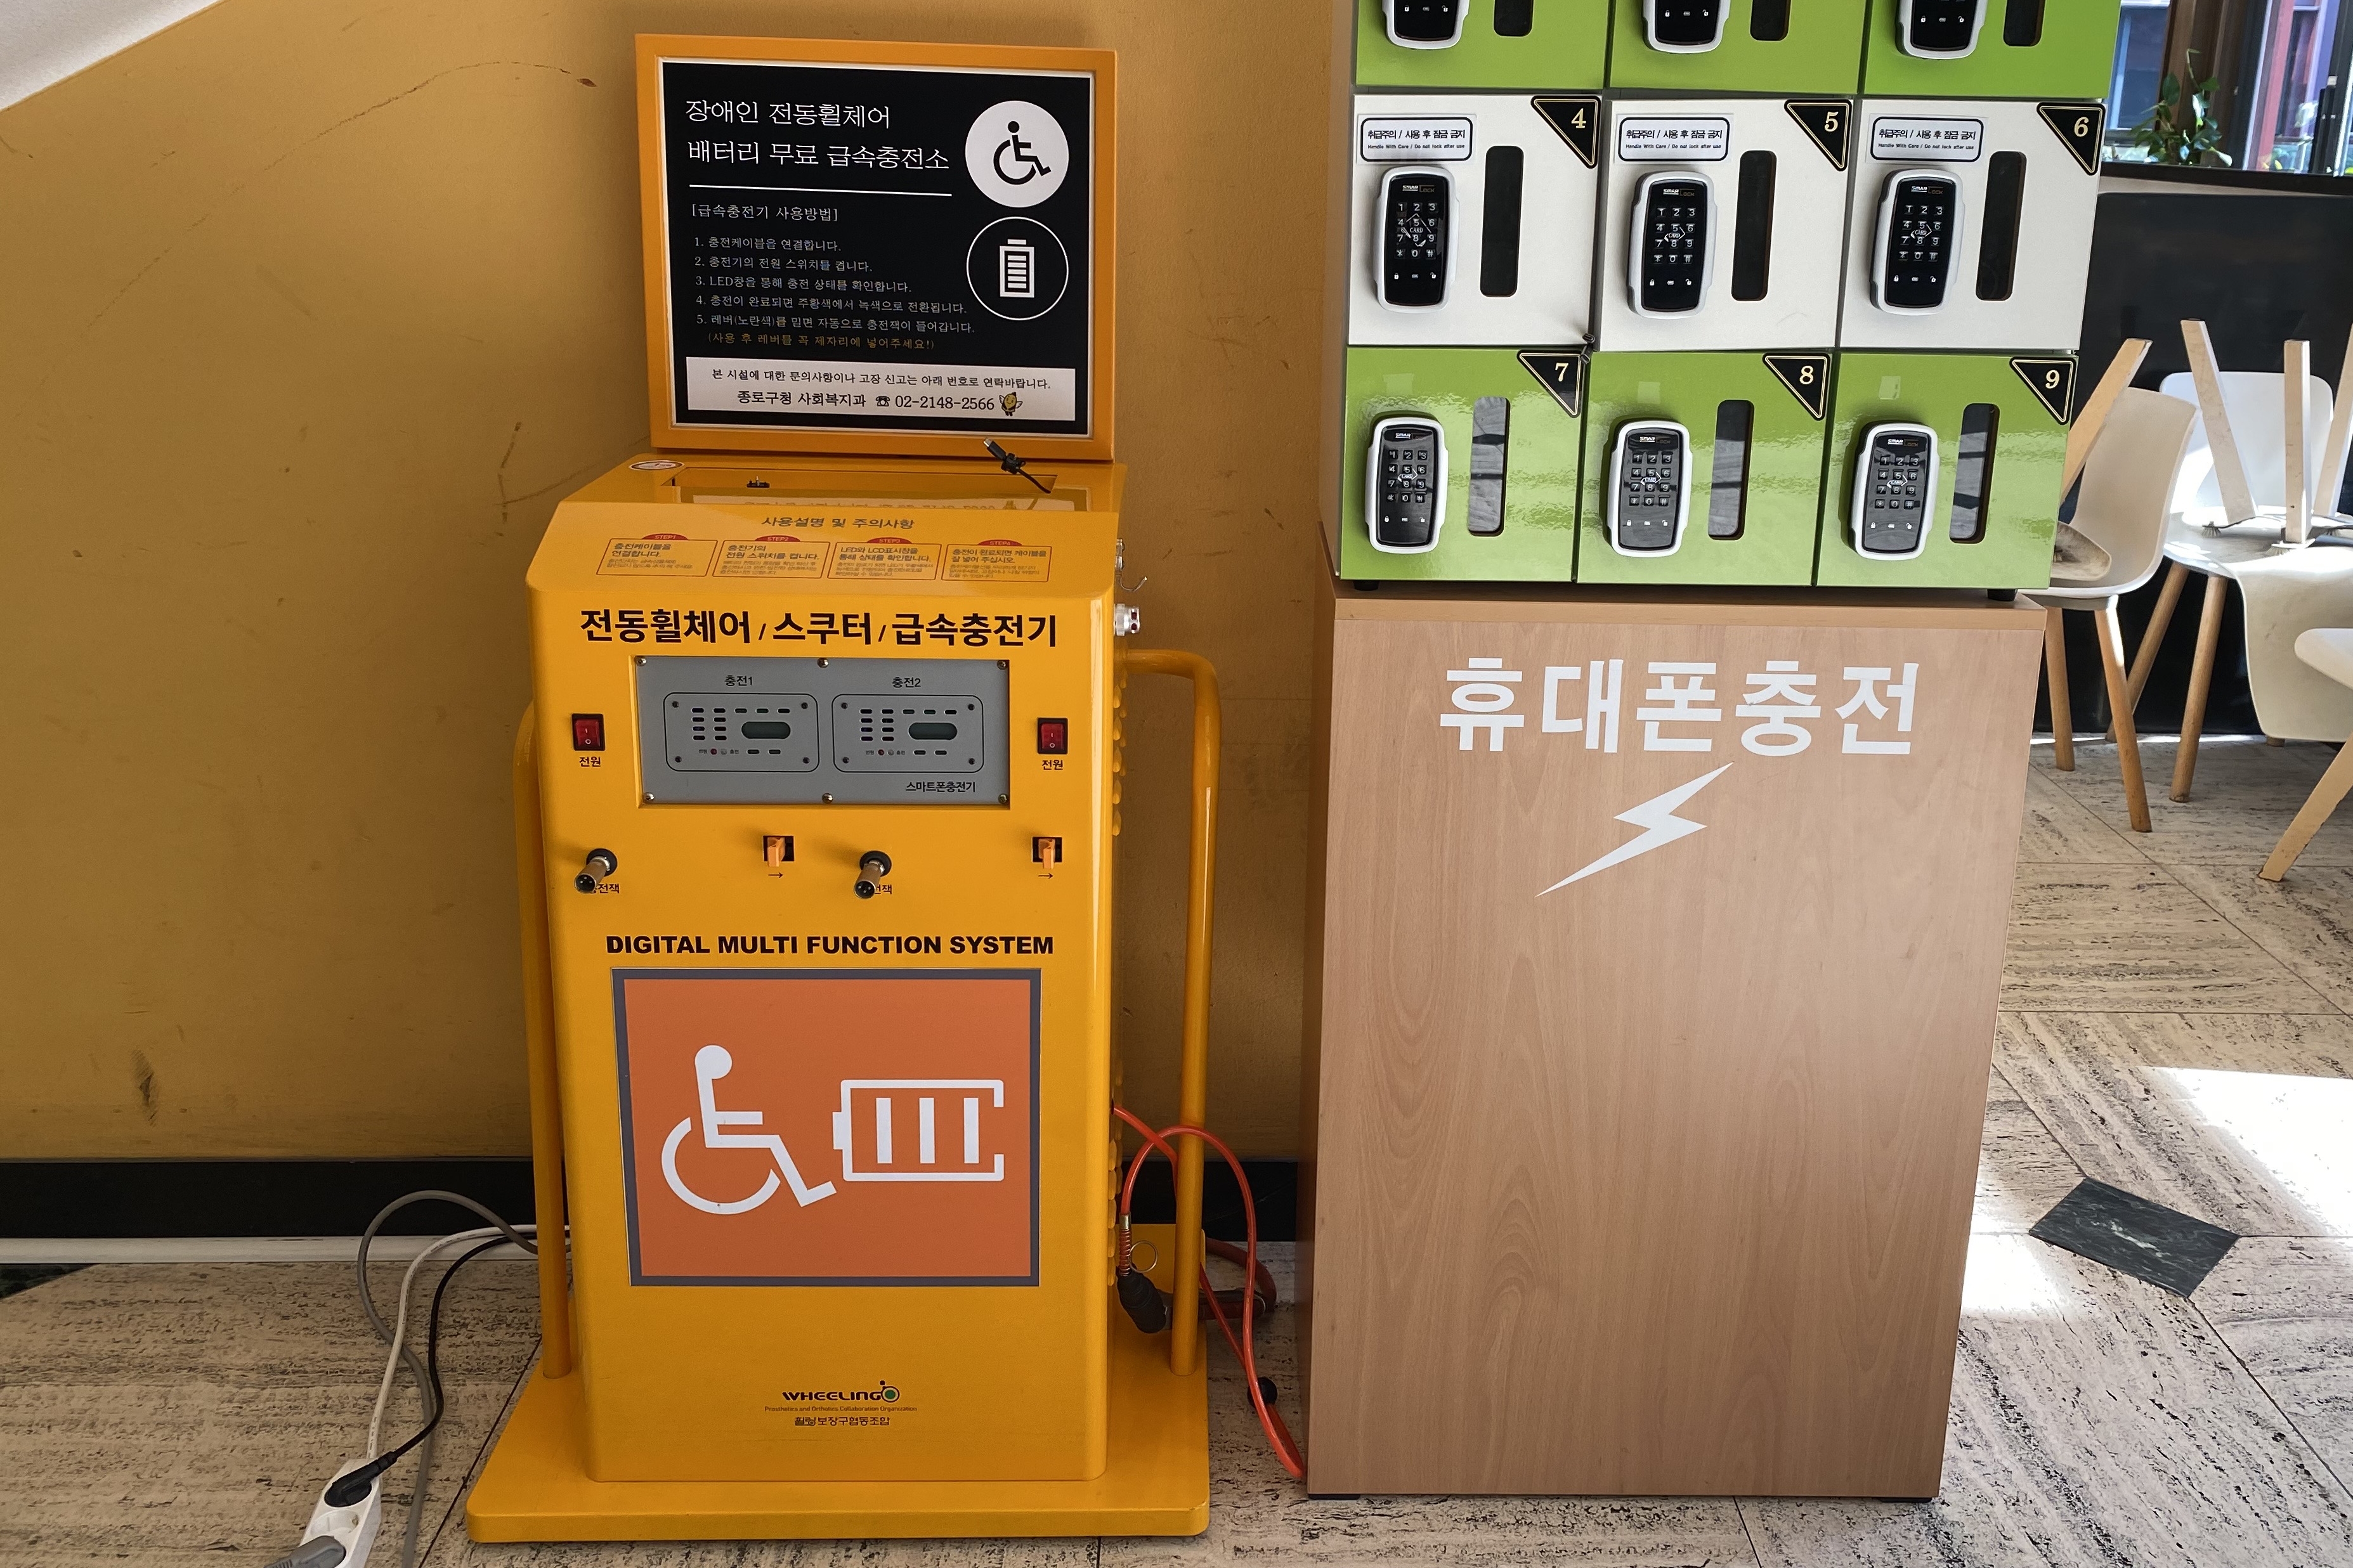 안내판/안내데스크0 : 서울역사박물관 전동휠체어 충전기와 휴대폰 충전기